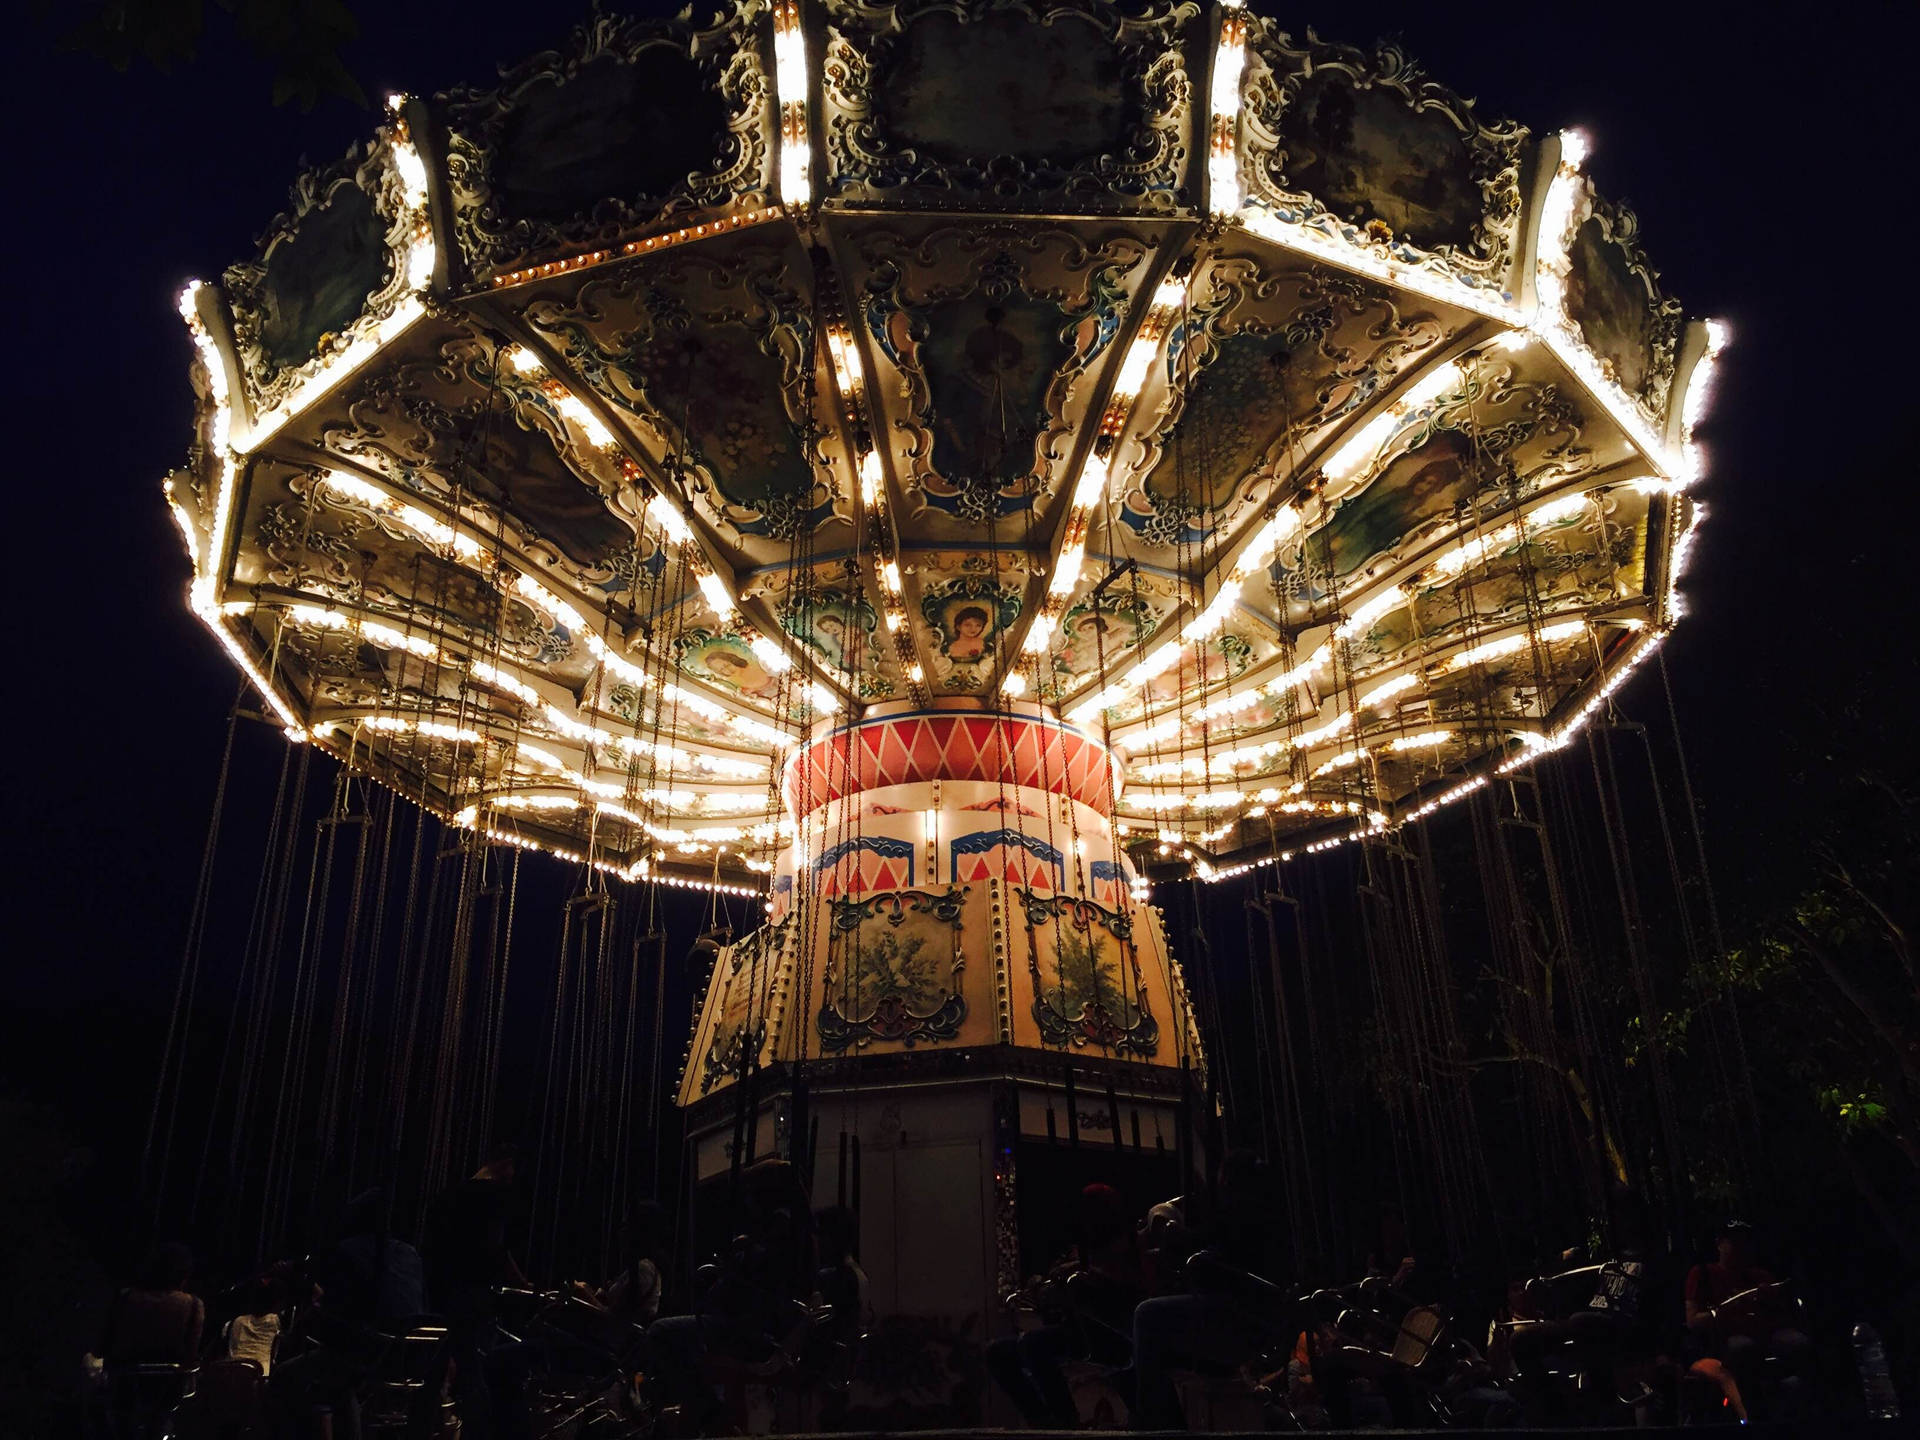 Dark Theme Carousel Ride At Night Wallpaper